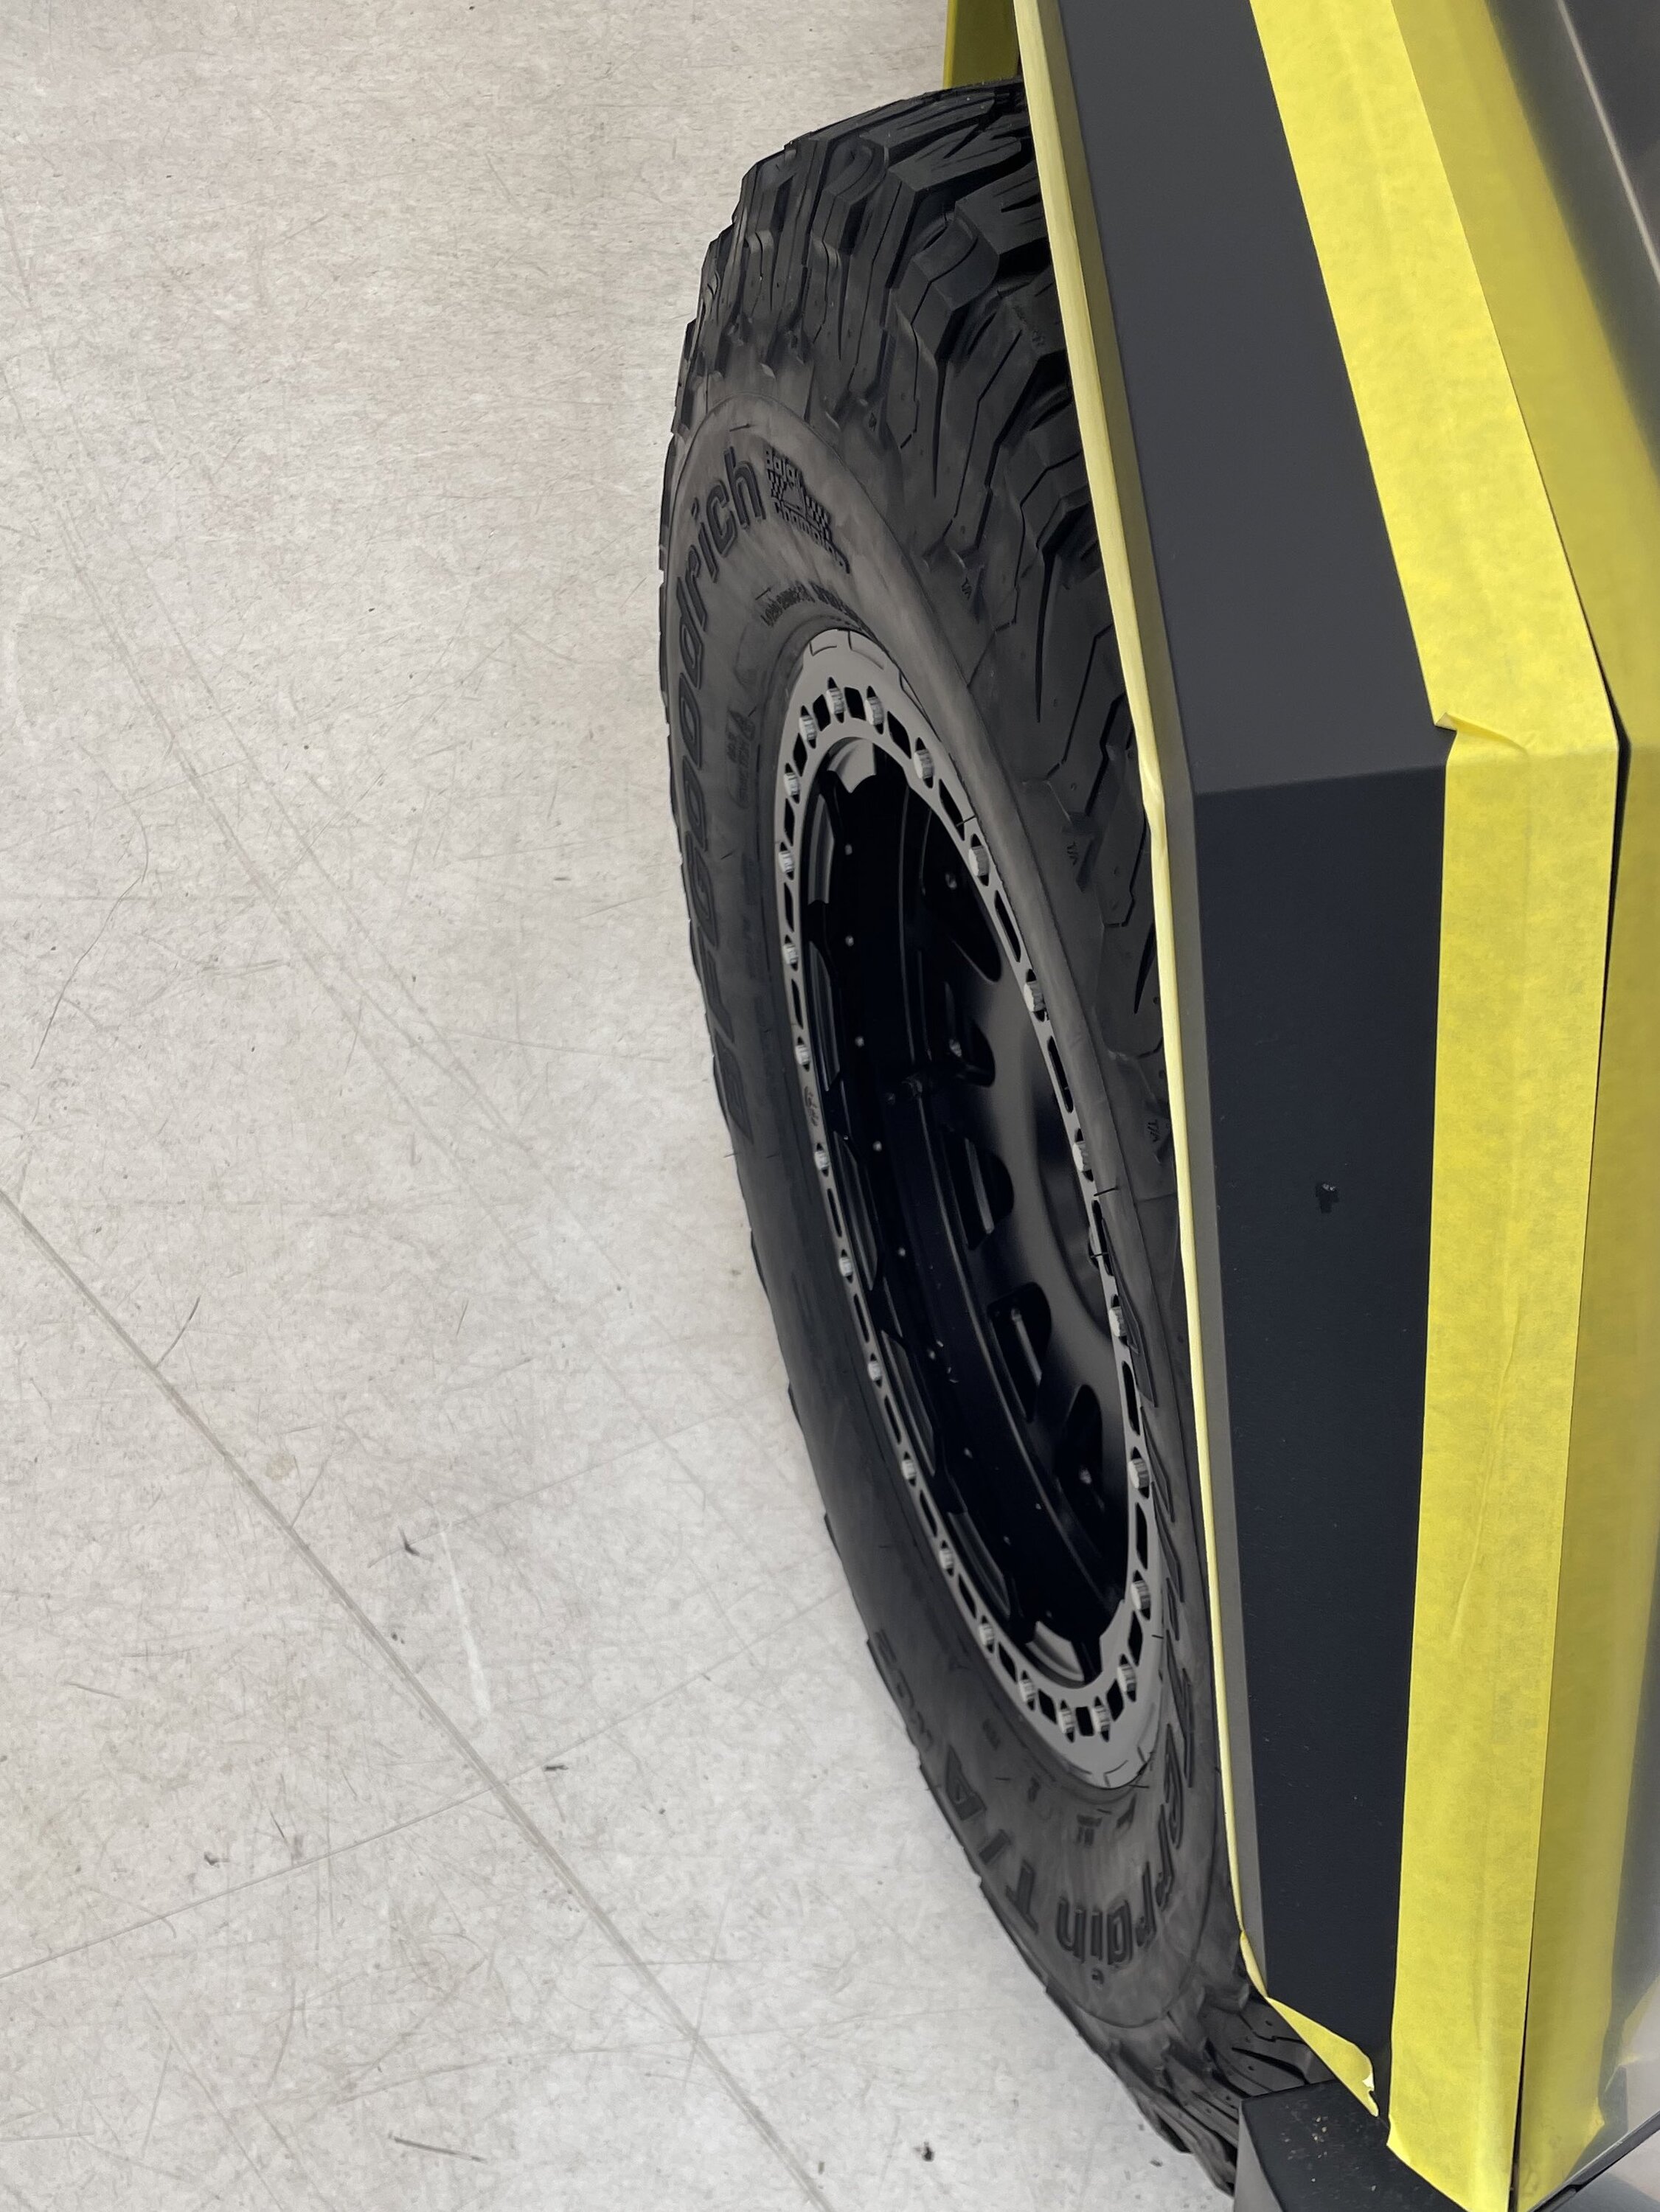 37%22 inch 37s tires on Cybertruck Tesla aftermarket wheels 2.jpeg